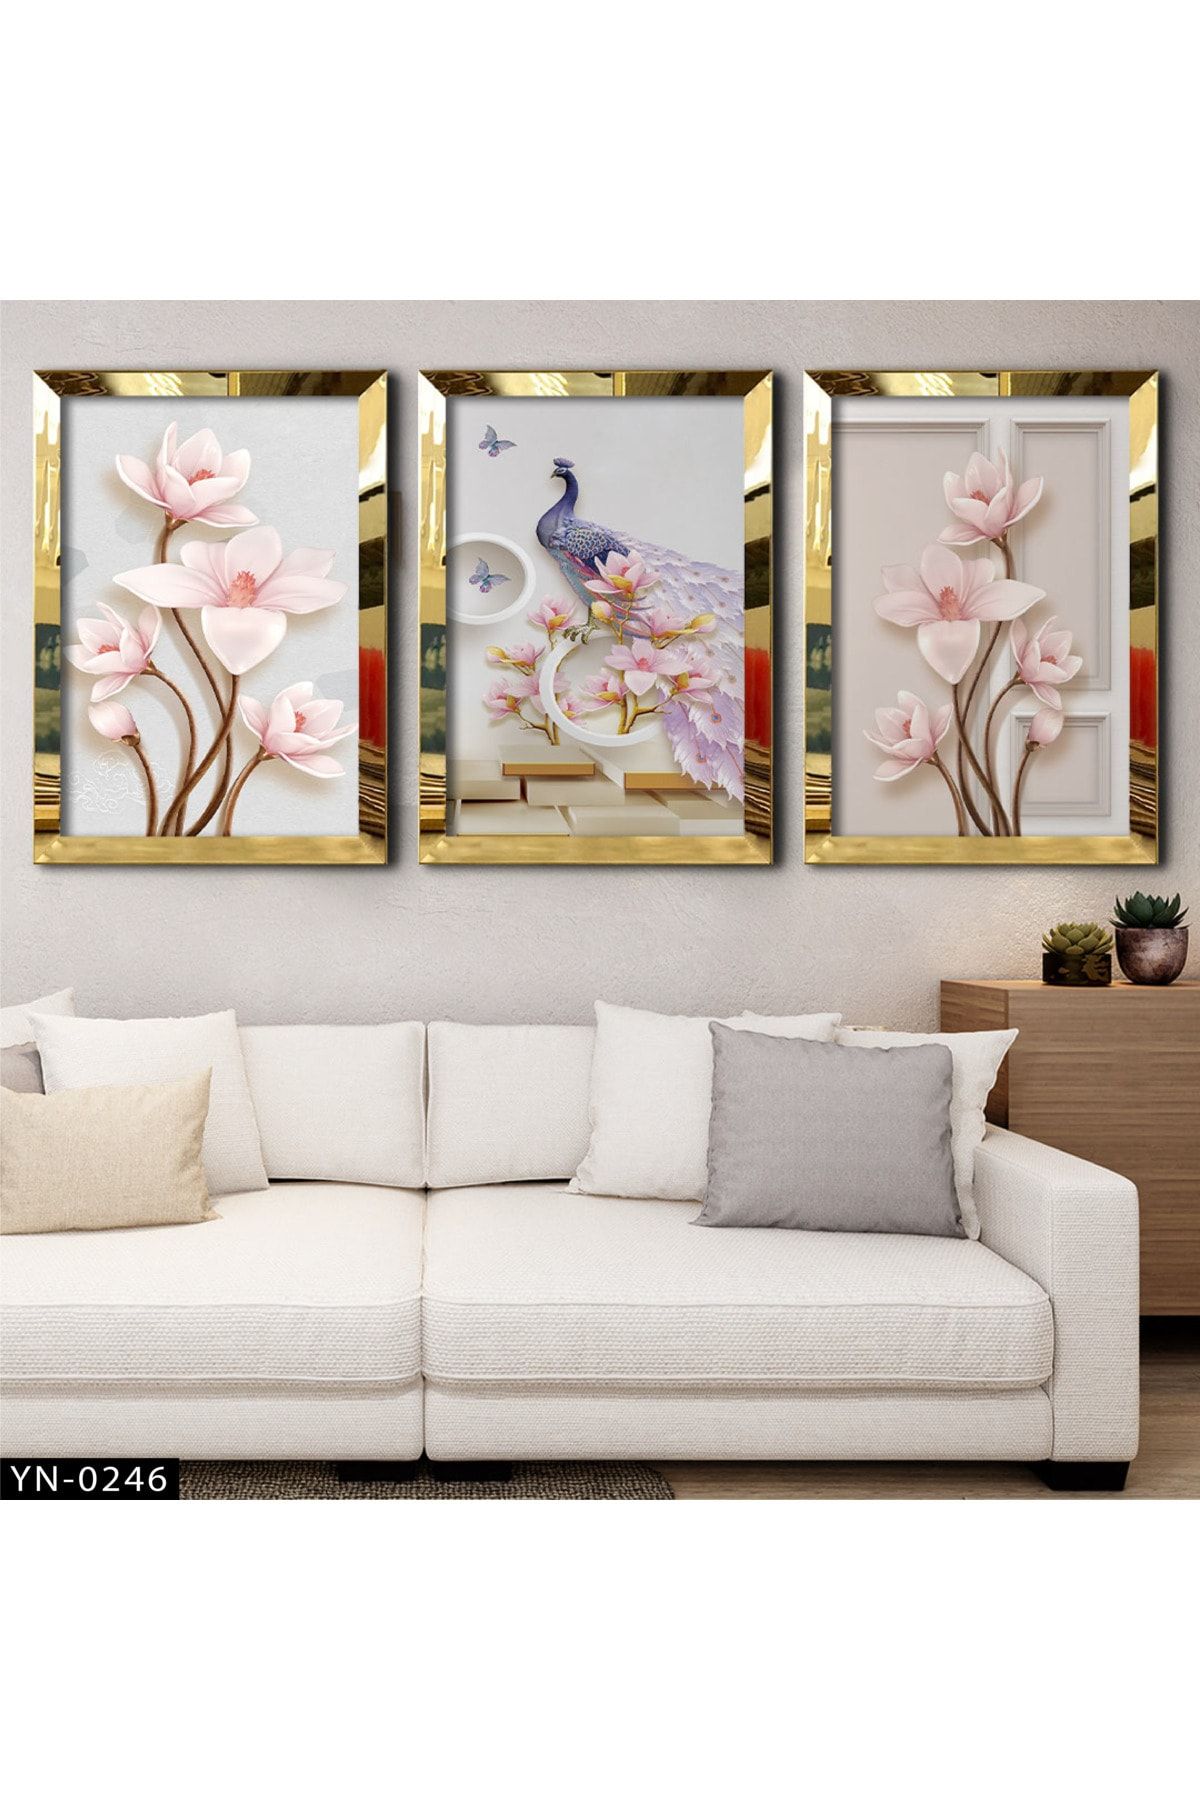 hanhomeart Üç Boyutlu Çiçekler - Tavus Kuşu - Gold Ayna Çerçeveli Tablo 3'lü Set-hyn-0246